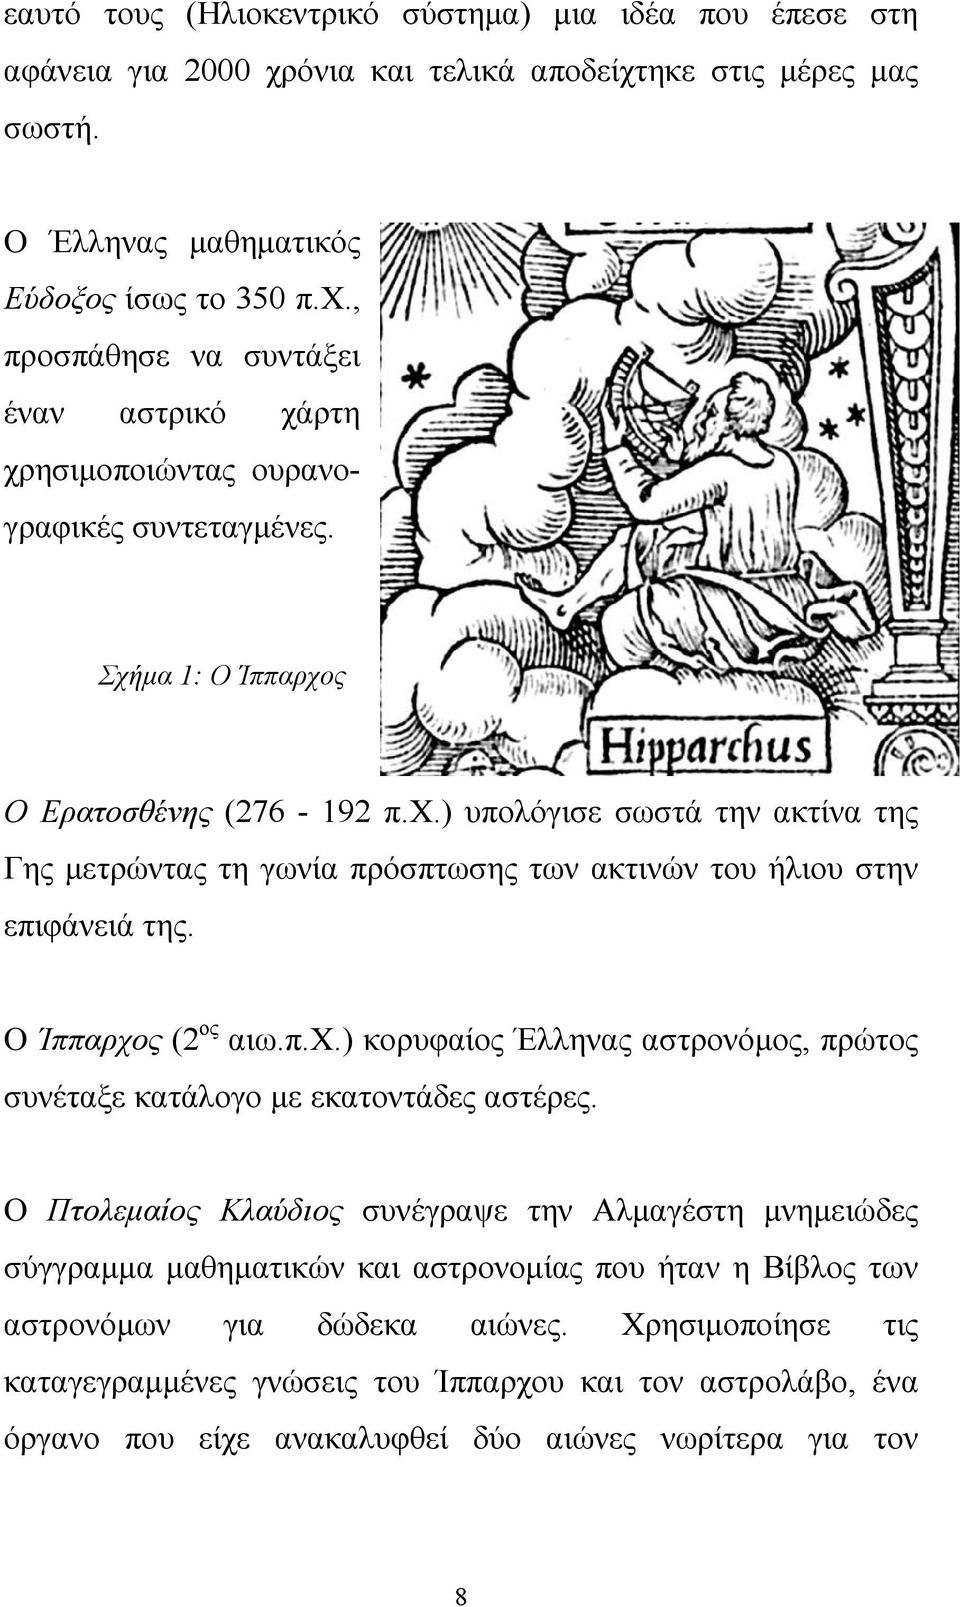 Ο Πτολεμαίος Κλαύδιος συνέγραψε την Αλμαγέστη μνημειώδες σύγγραμμα μαθηματικών και αστρονομίας που ήταν η Βίβλος των αστρονόμων για δώδεκα αιώνες.